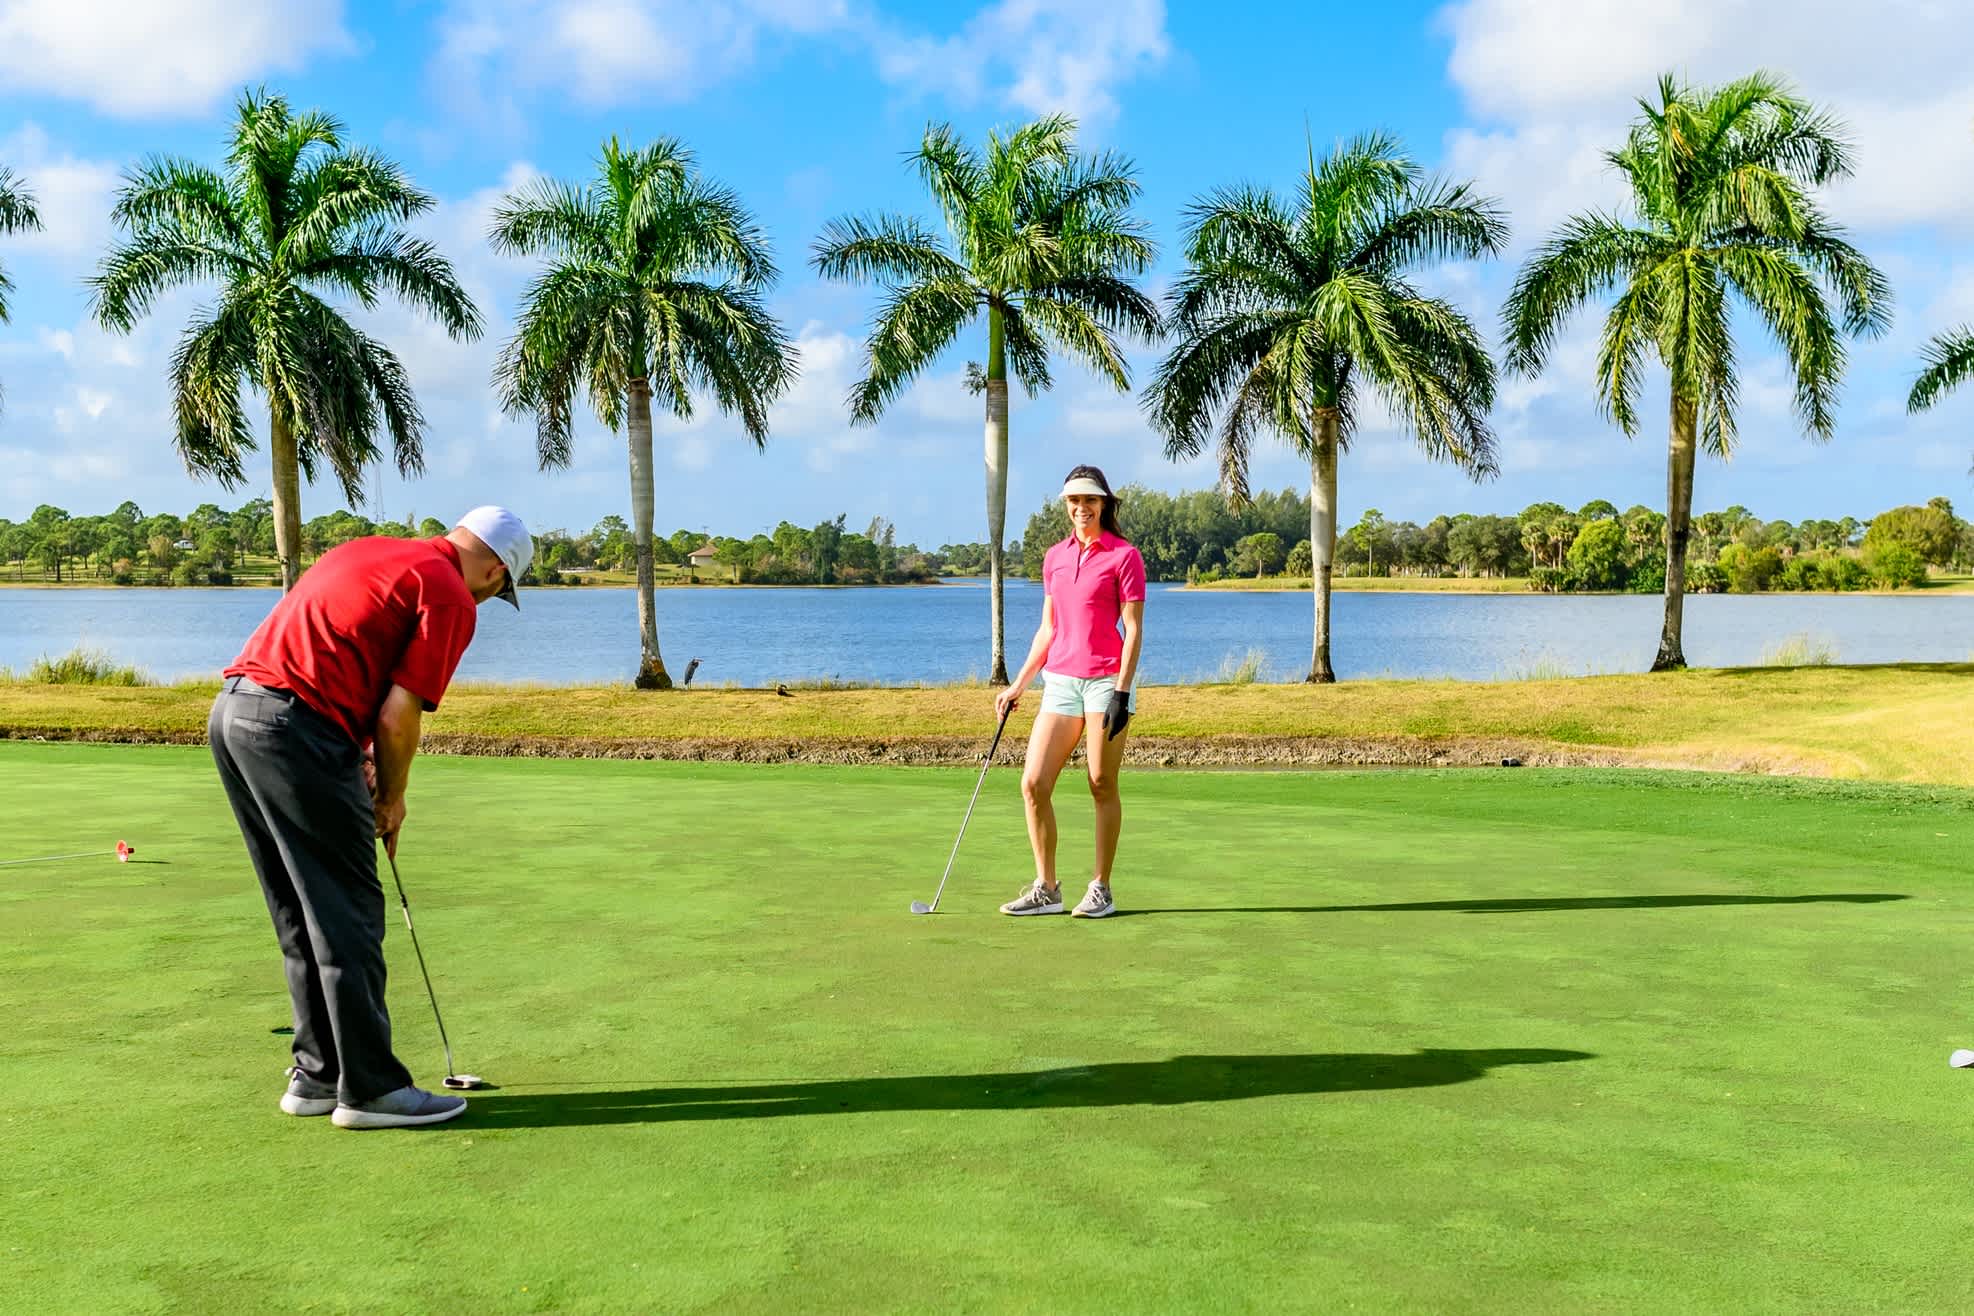 Golfer auf dem Golfplatz mit Palmbäume

